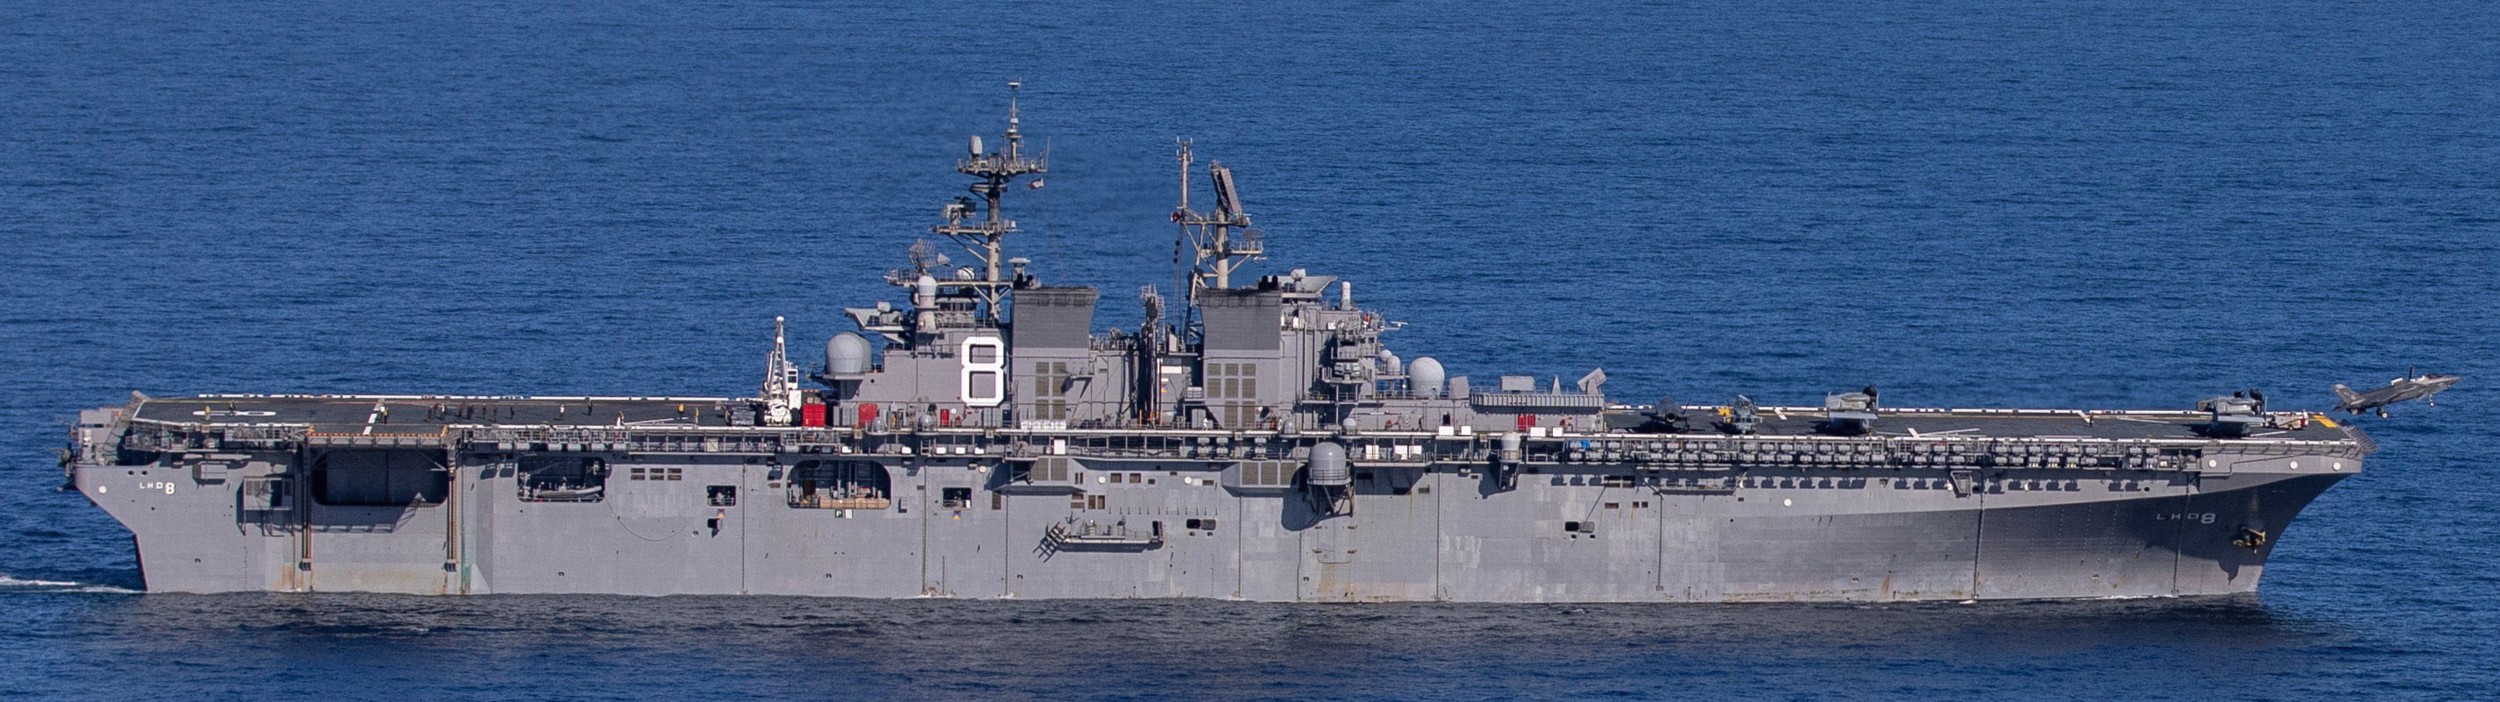 lhd-8 uss makin island amphibious assault ship landing helicopter dock us navy 155